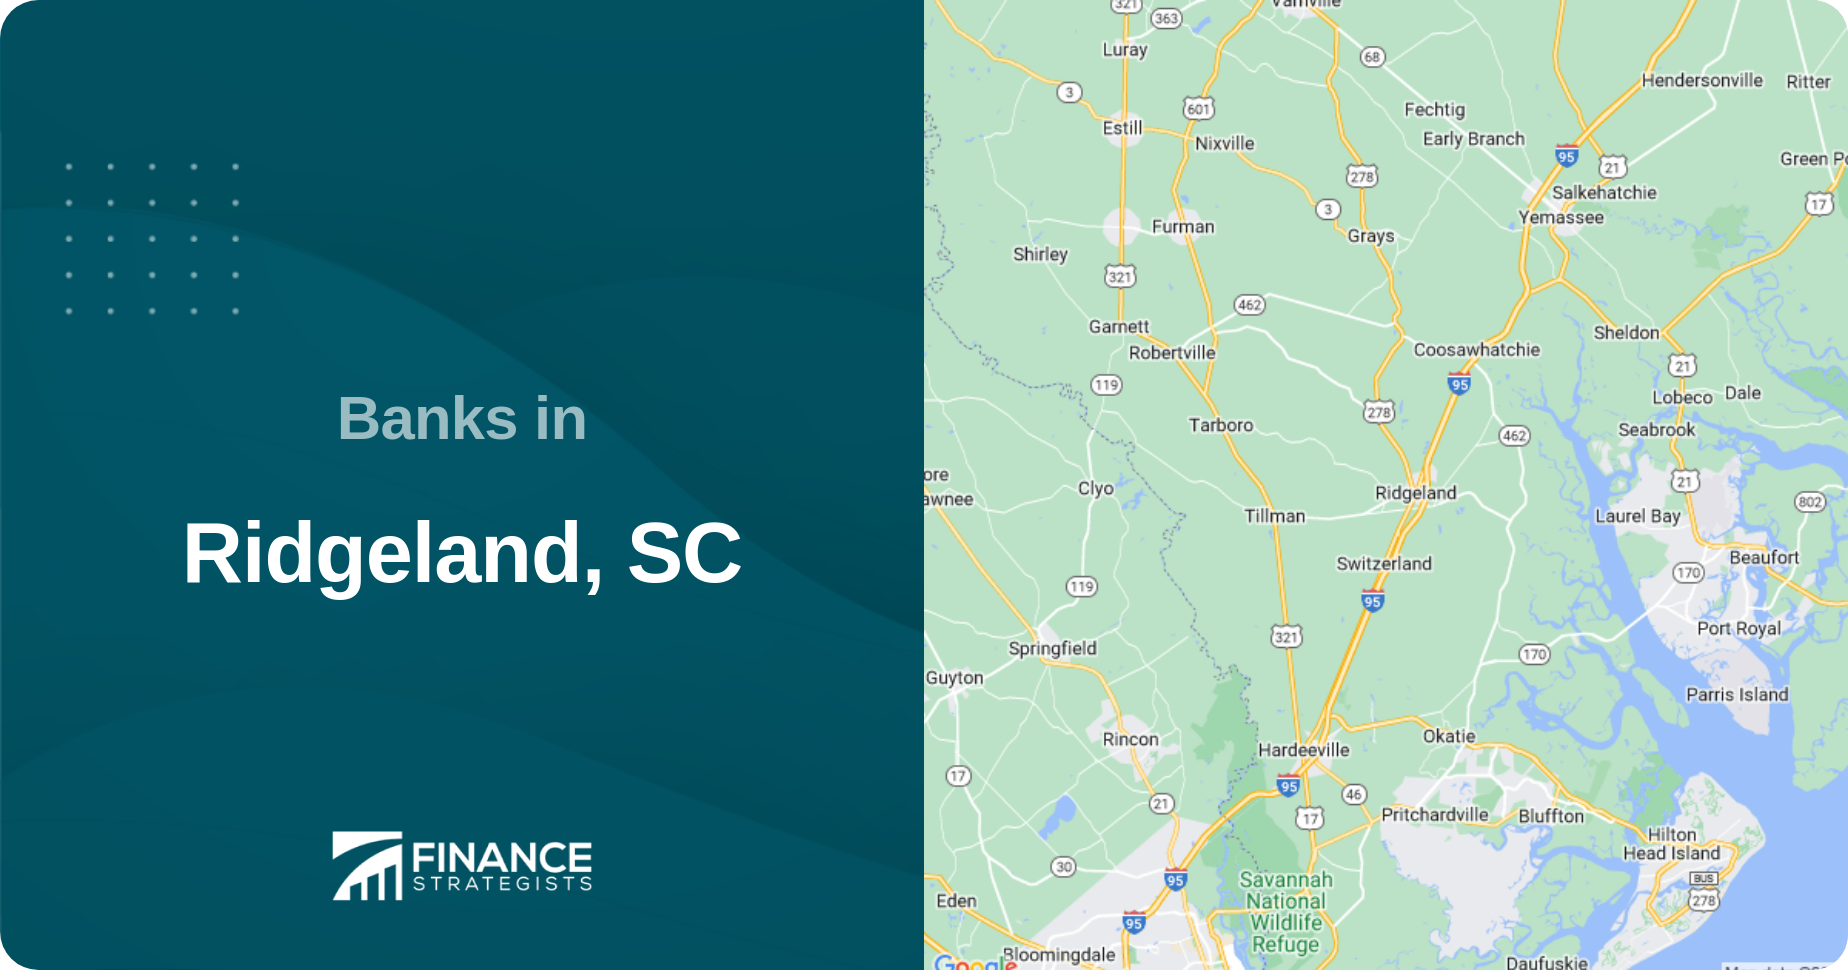 Banks in Ridgeland, SC